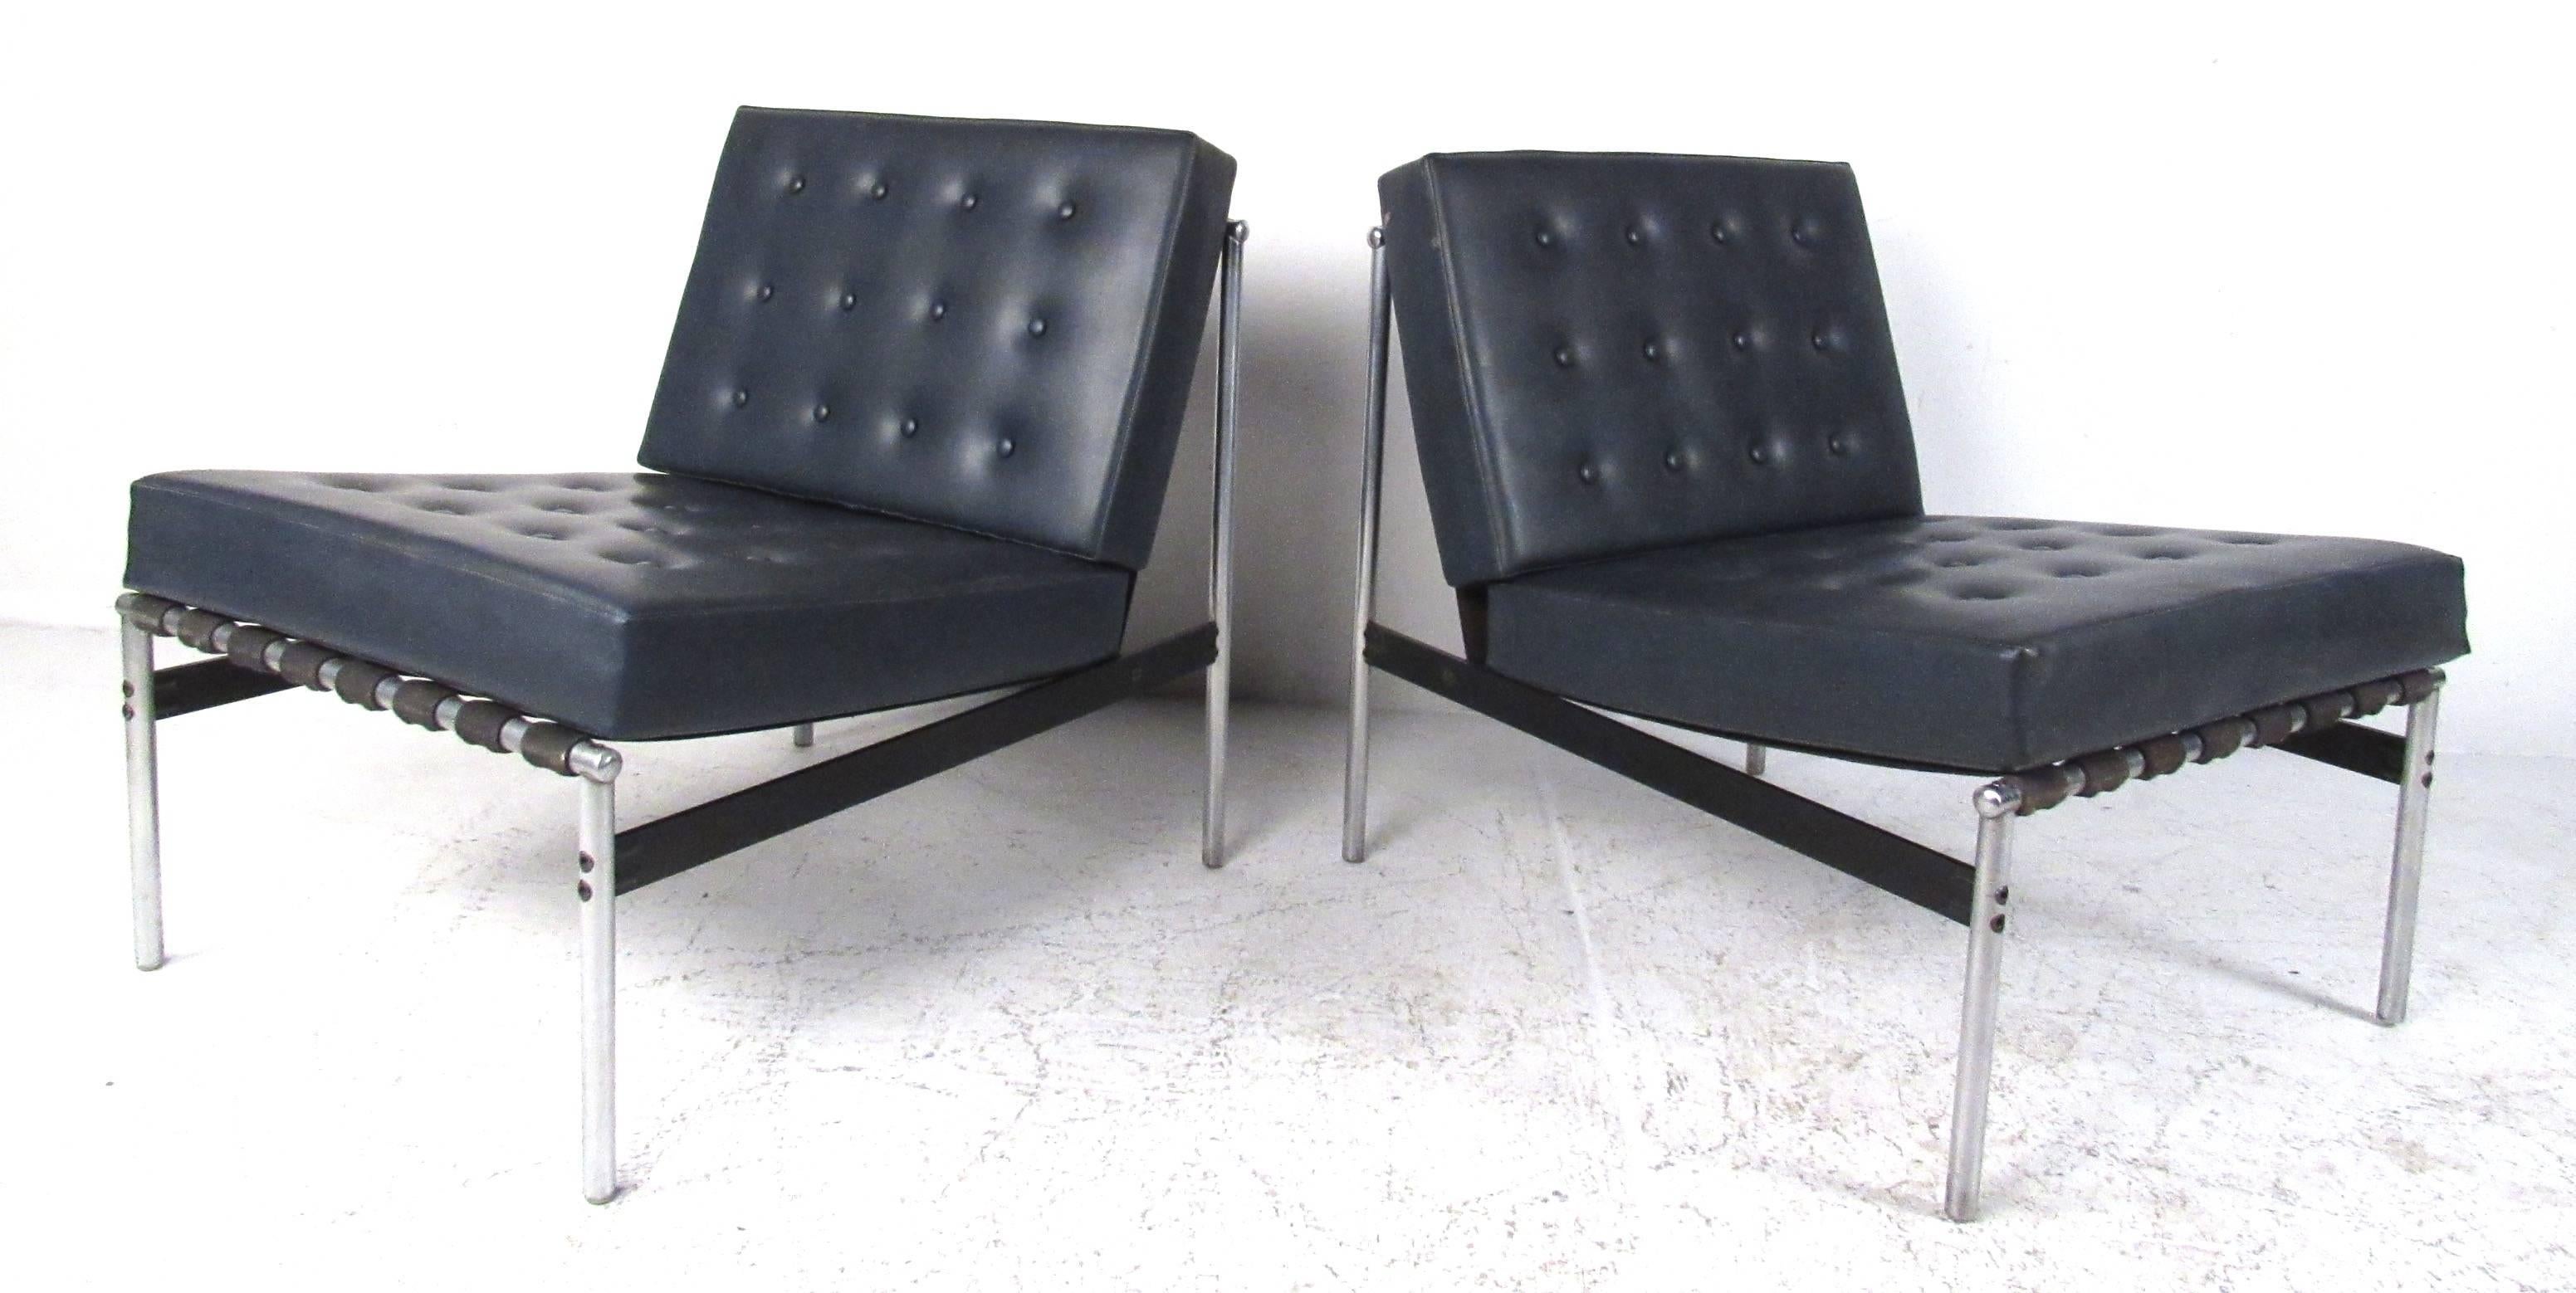 Paire de fauteuils en vinyle touffeté de style bar parallèle dans le style de Florence Knoll. Style moderne du milieu du siècle avec des coussins en vinyle noir soutenus par des cadres tubulaires en aluminium et des sangles tissées. 
Veuillez